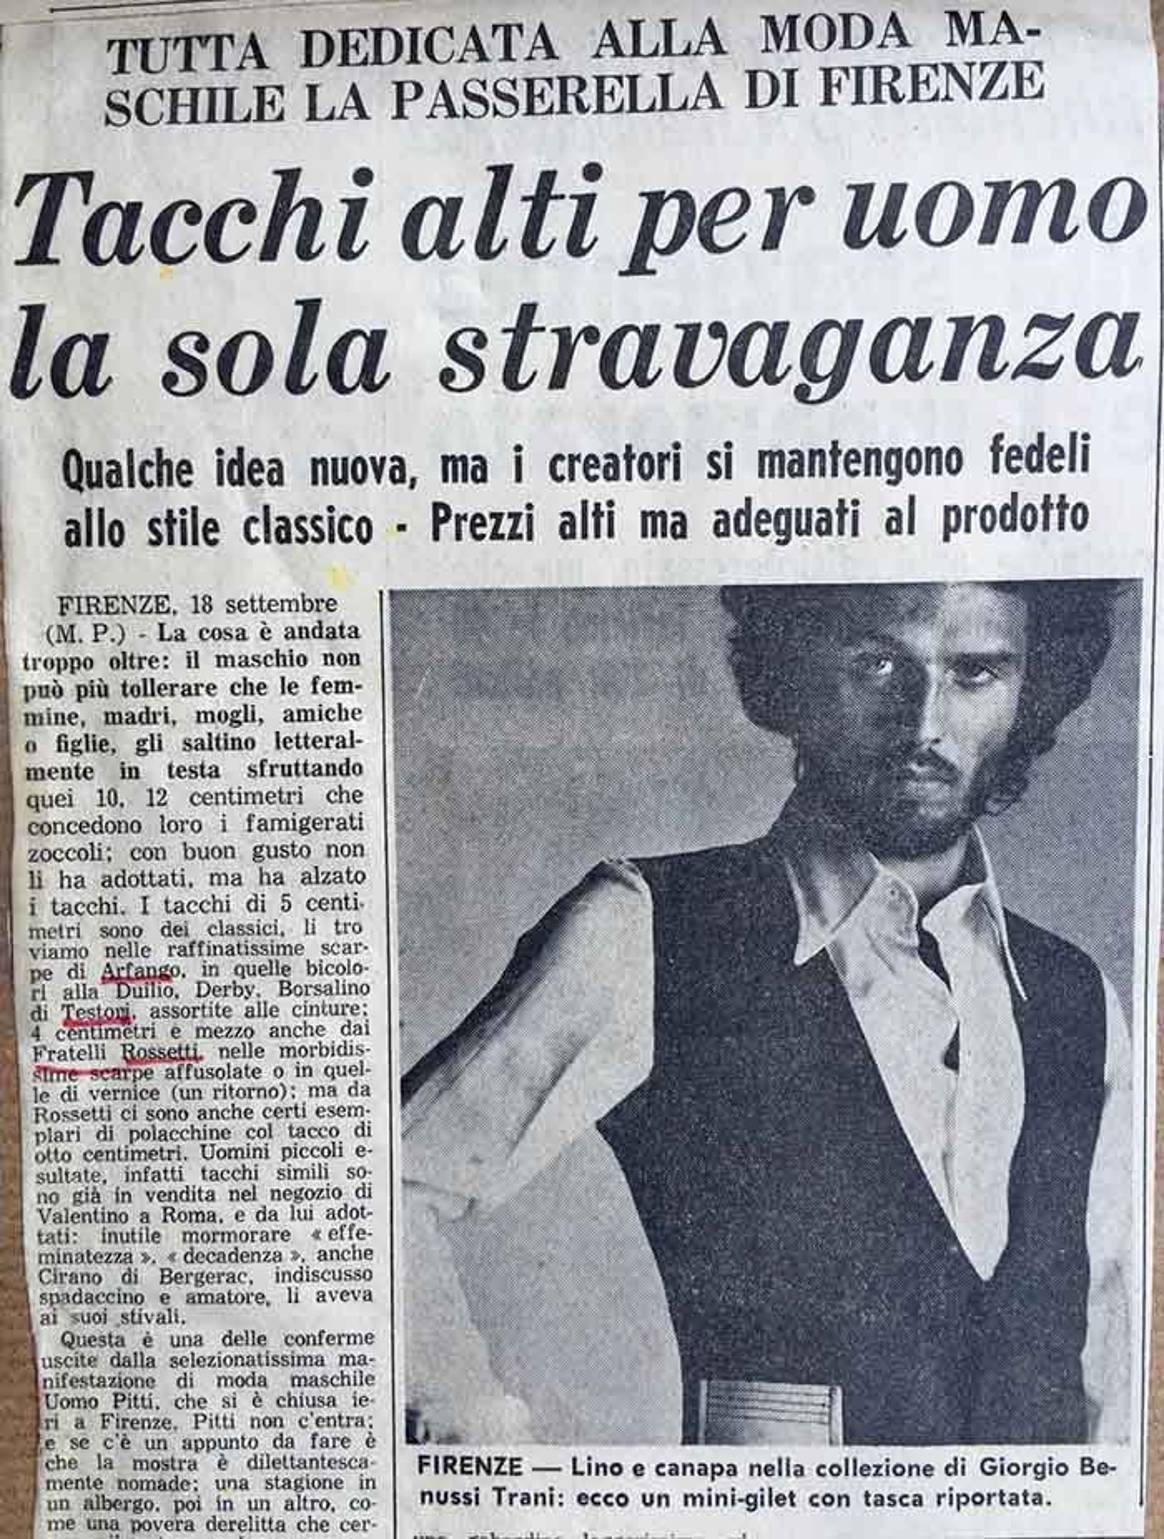 Pitti Uomo стартовала во Флоренции